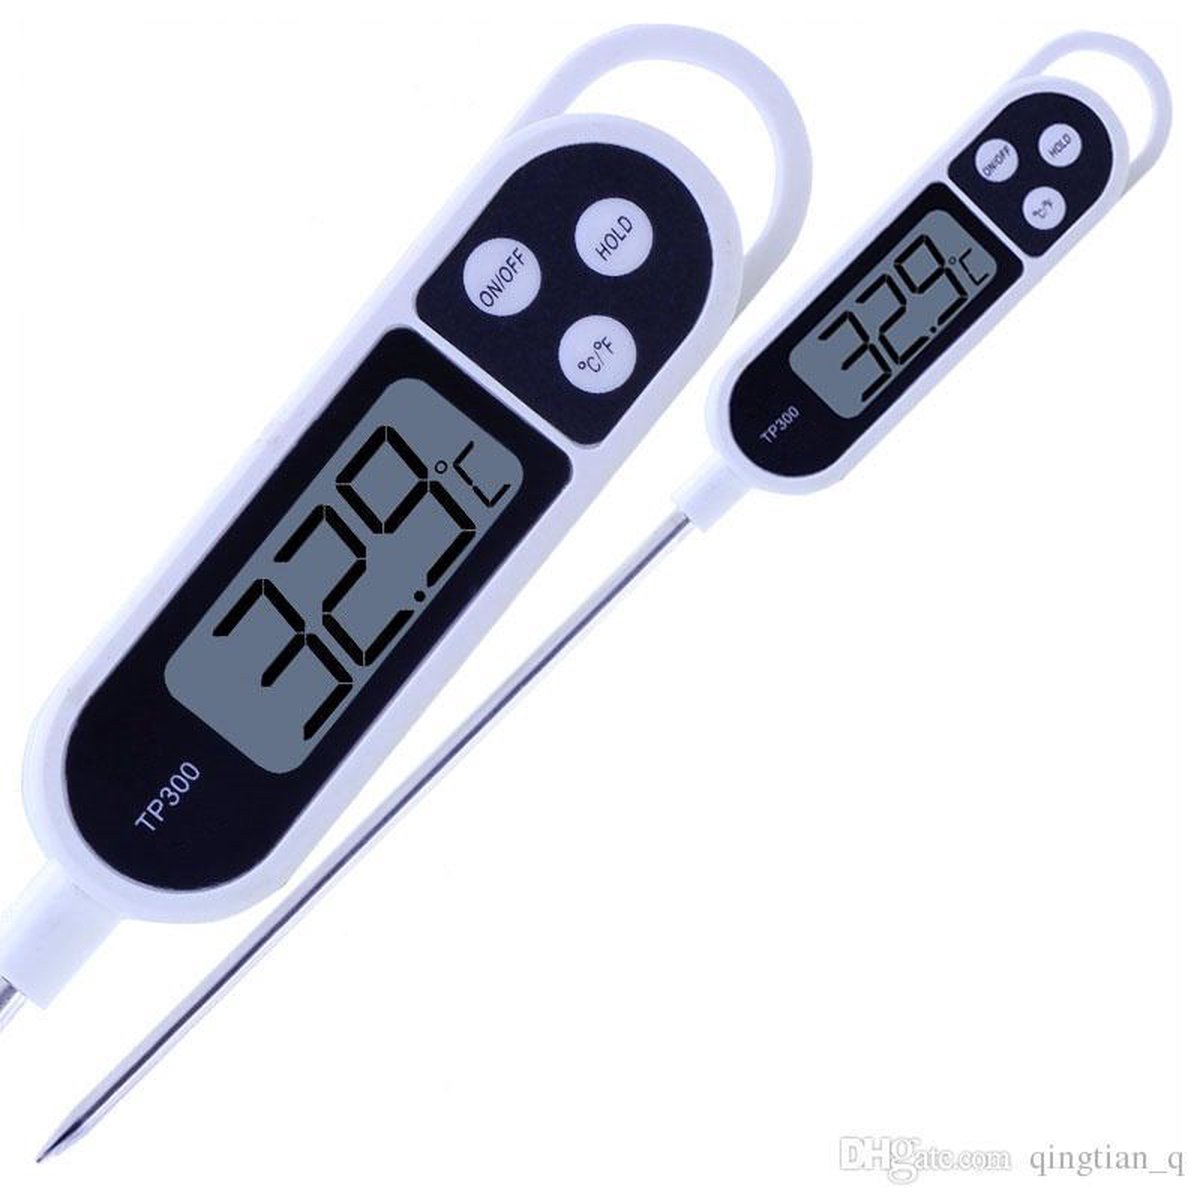 Digitale Multifunctionele Thermometer - vleesthermometer - kerntemperatuur vlees meten - temperatuur vloeistof meten - Voor de juiste temperatuur van je producten - Wit-zwart - Merkloos